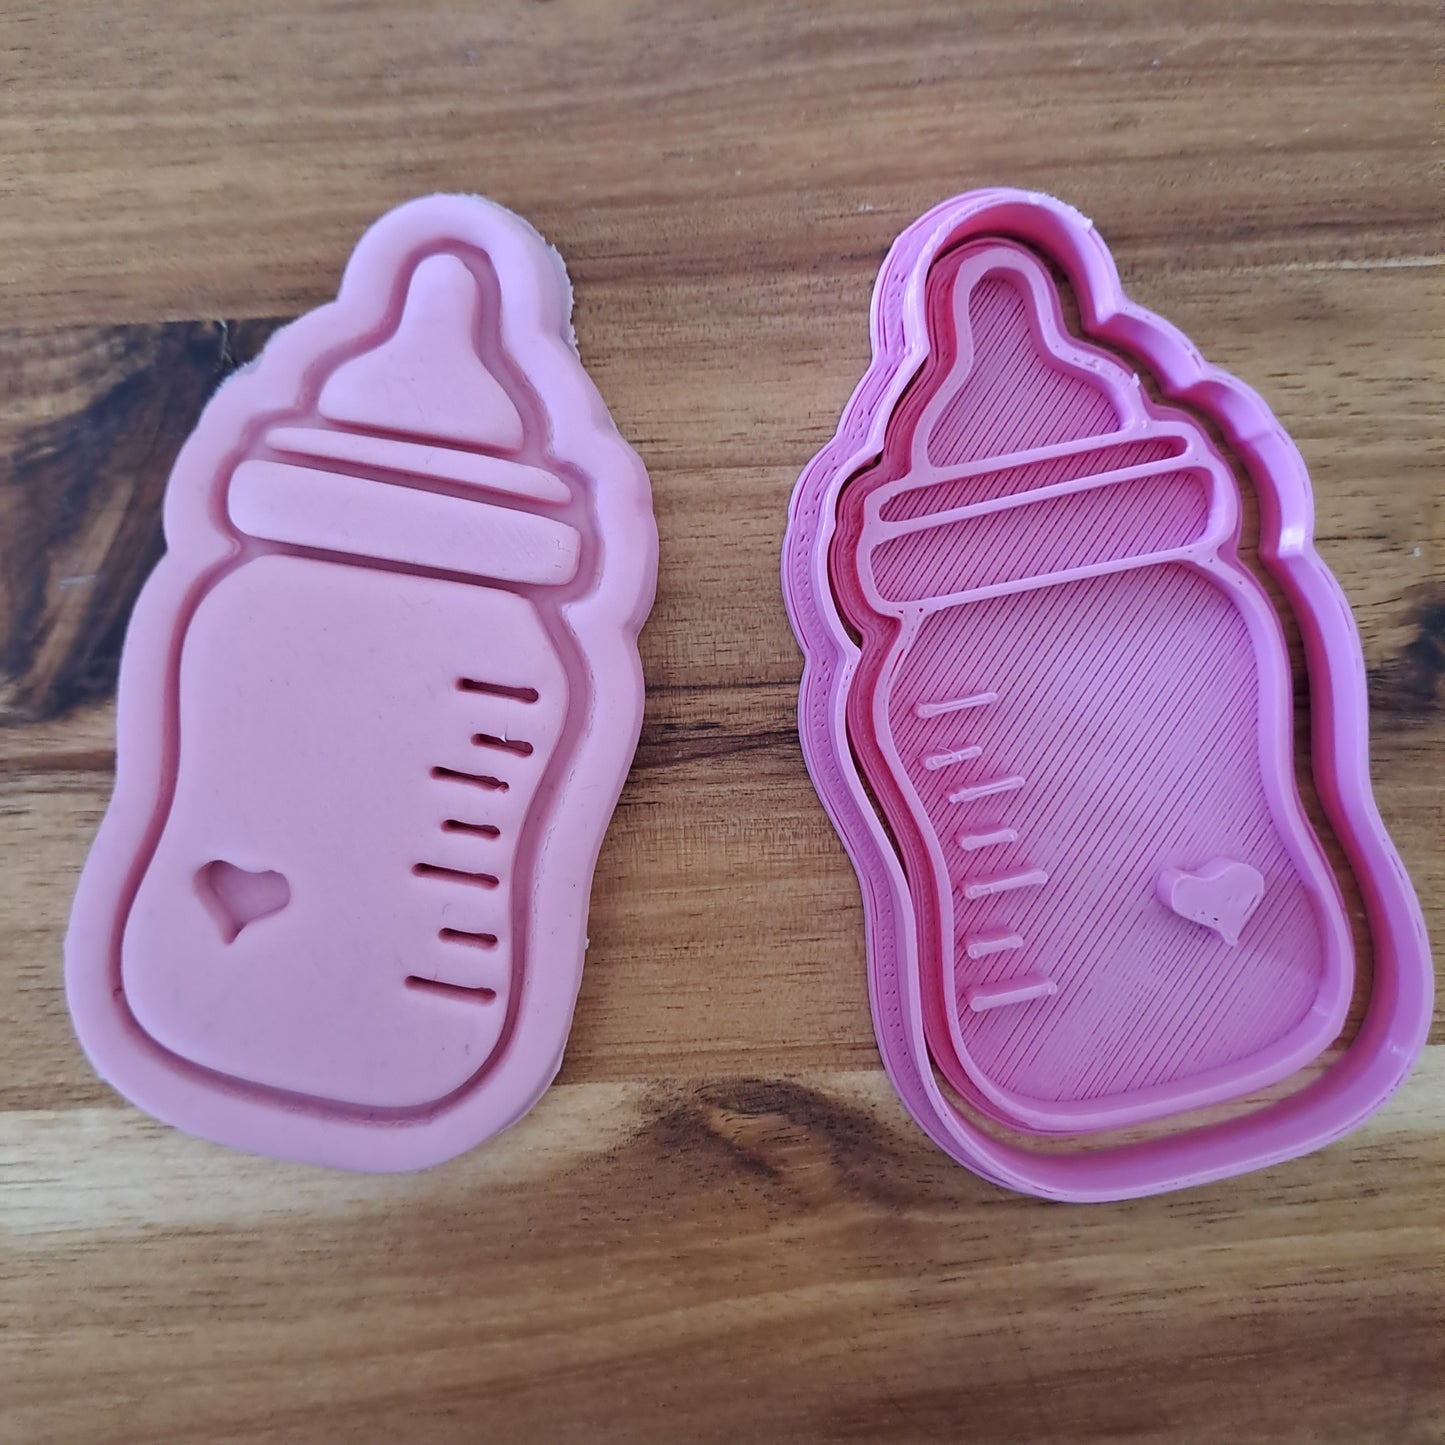 Set Baby Shower Mod.1 - New Born - Cookies Cutter - Stampi  per biscotti e pasta di zucchero